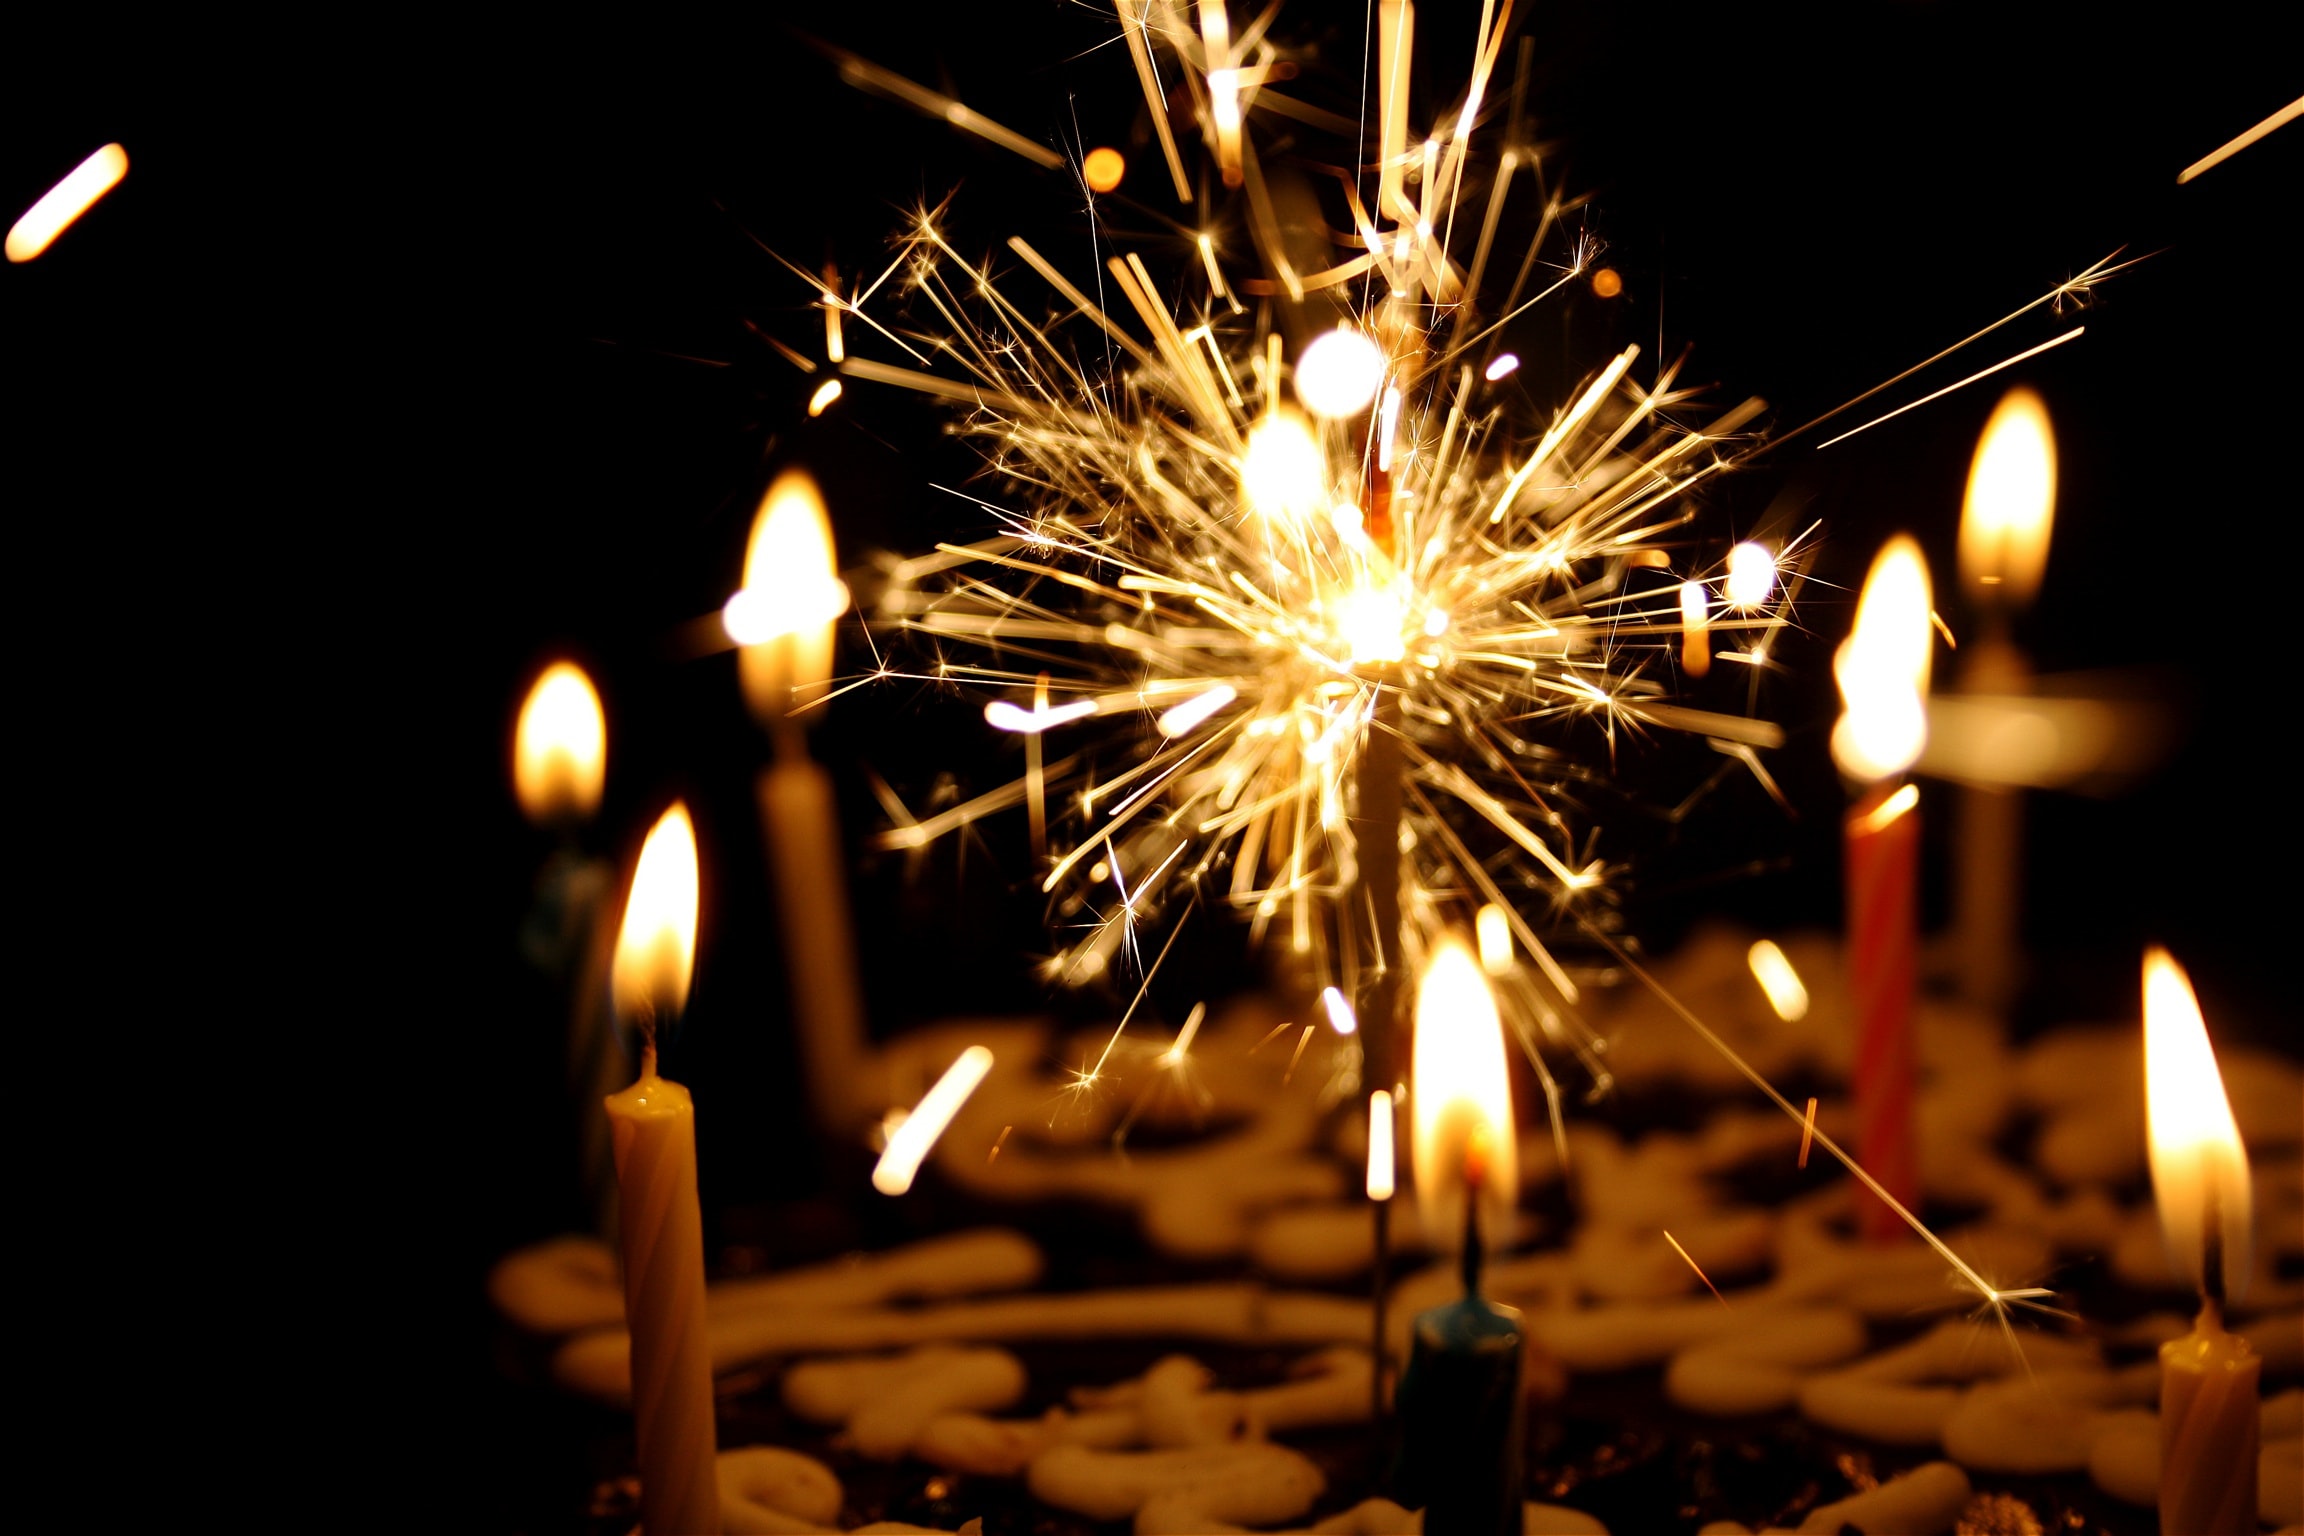 48 mensagens de aniversário em inglês para celebrar a vida (com